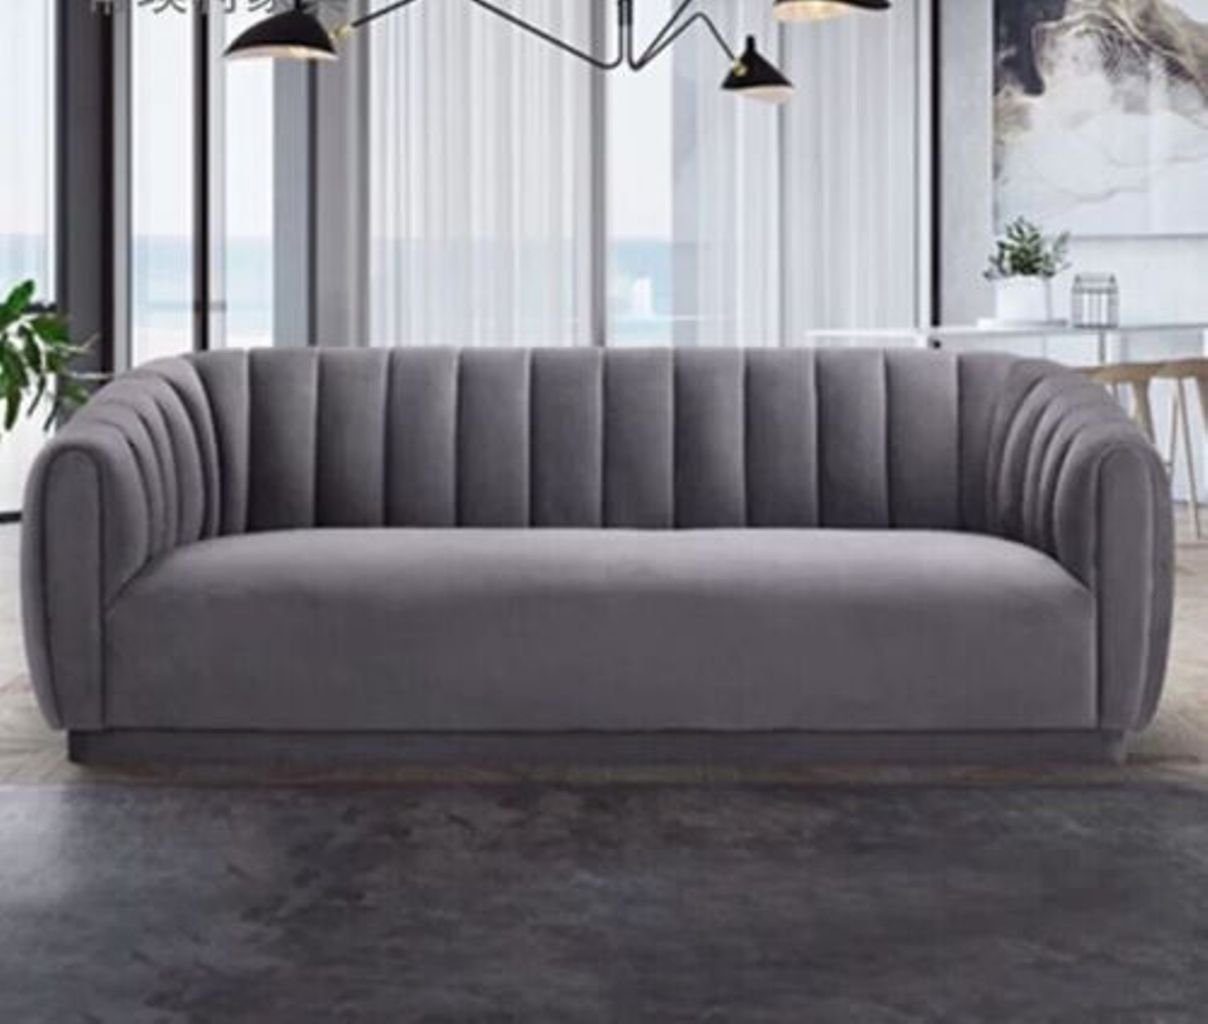 JVmoebel 3-Sitzer Sofa Dreisitzer Couch Polster Design Sitz Sofas Zimmer Modern, Made in Europe